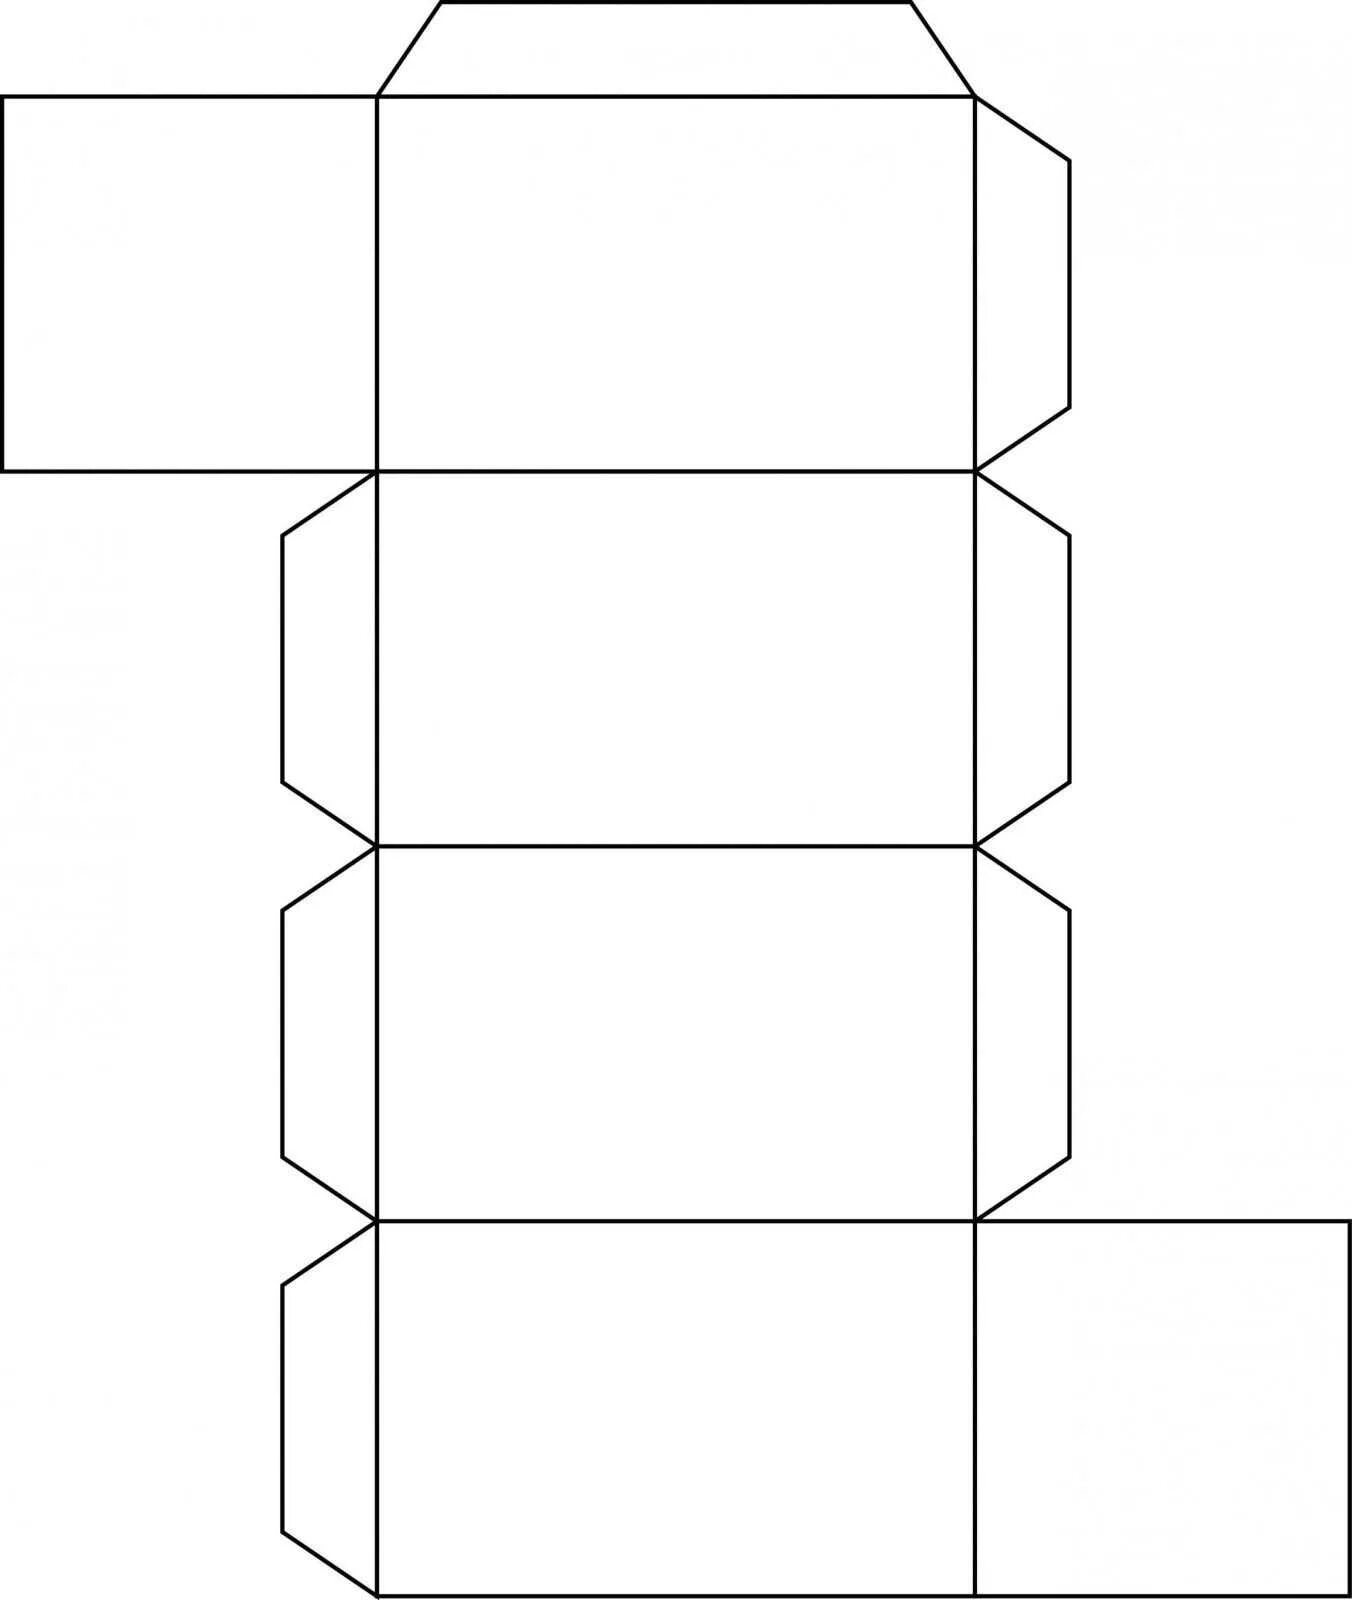 Шаблоны кубов из бумаги. Развертки Куба и параллелепипеда для склеивания. Параллелепипед развертка для склеивания а4. Прямоугольный параллелепипед развертка для склеивания а4. Развертка прямоугольного параллелепипеда а4.